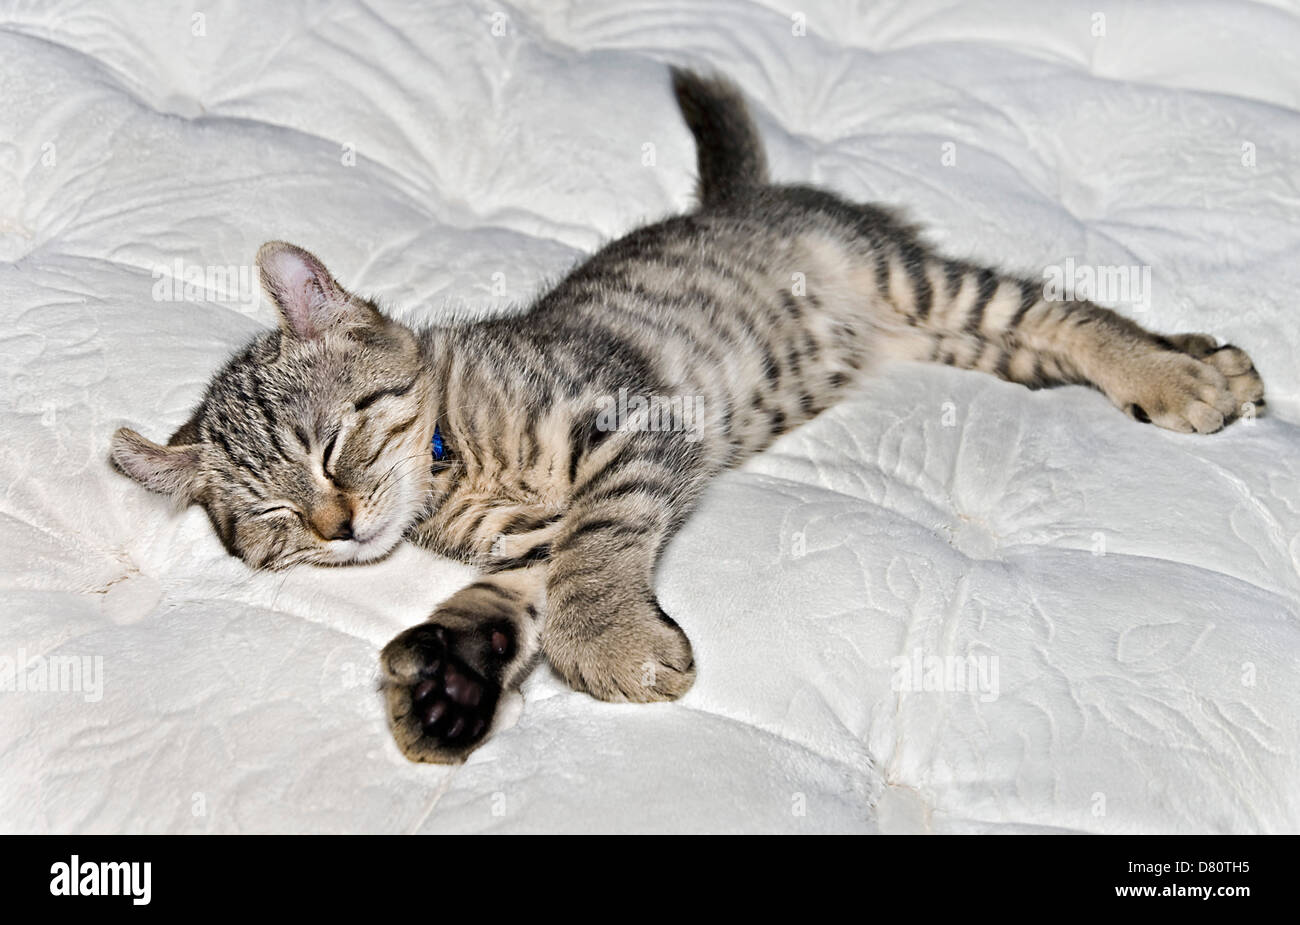 Cute Highlander Lynx kitten asleep on a mattress. Stock Photo